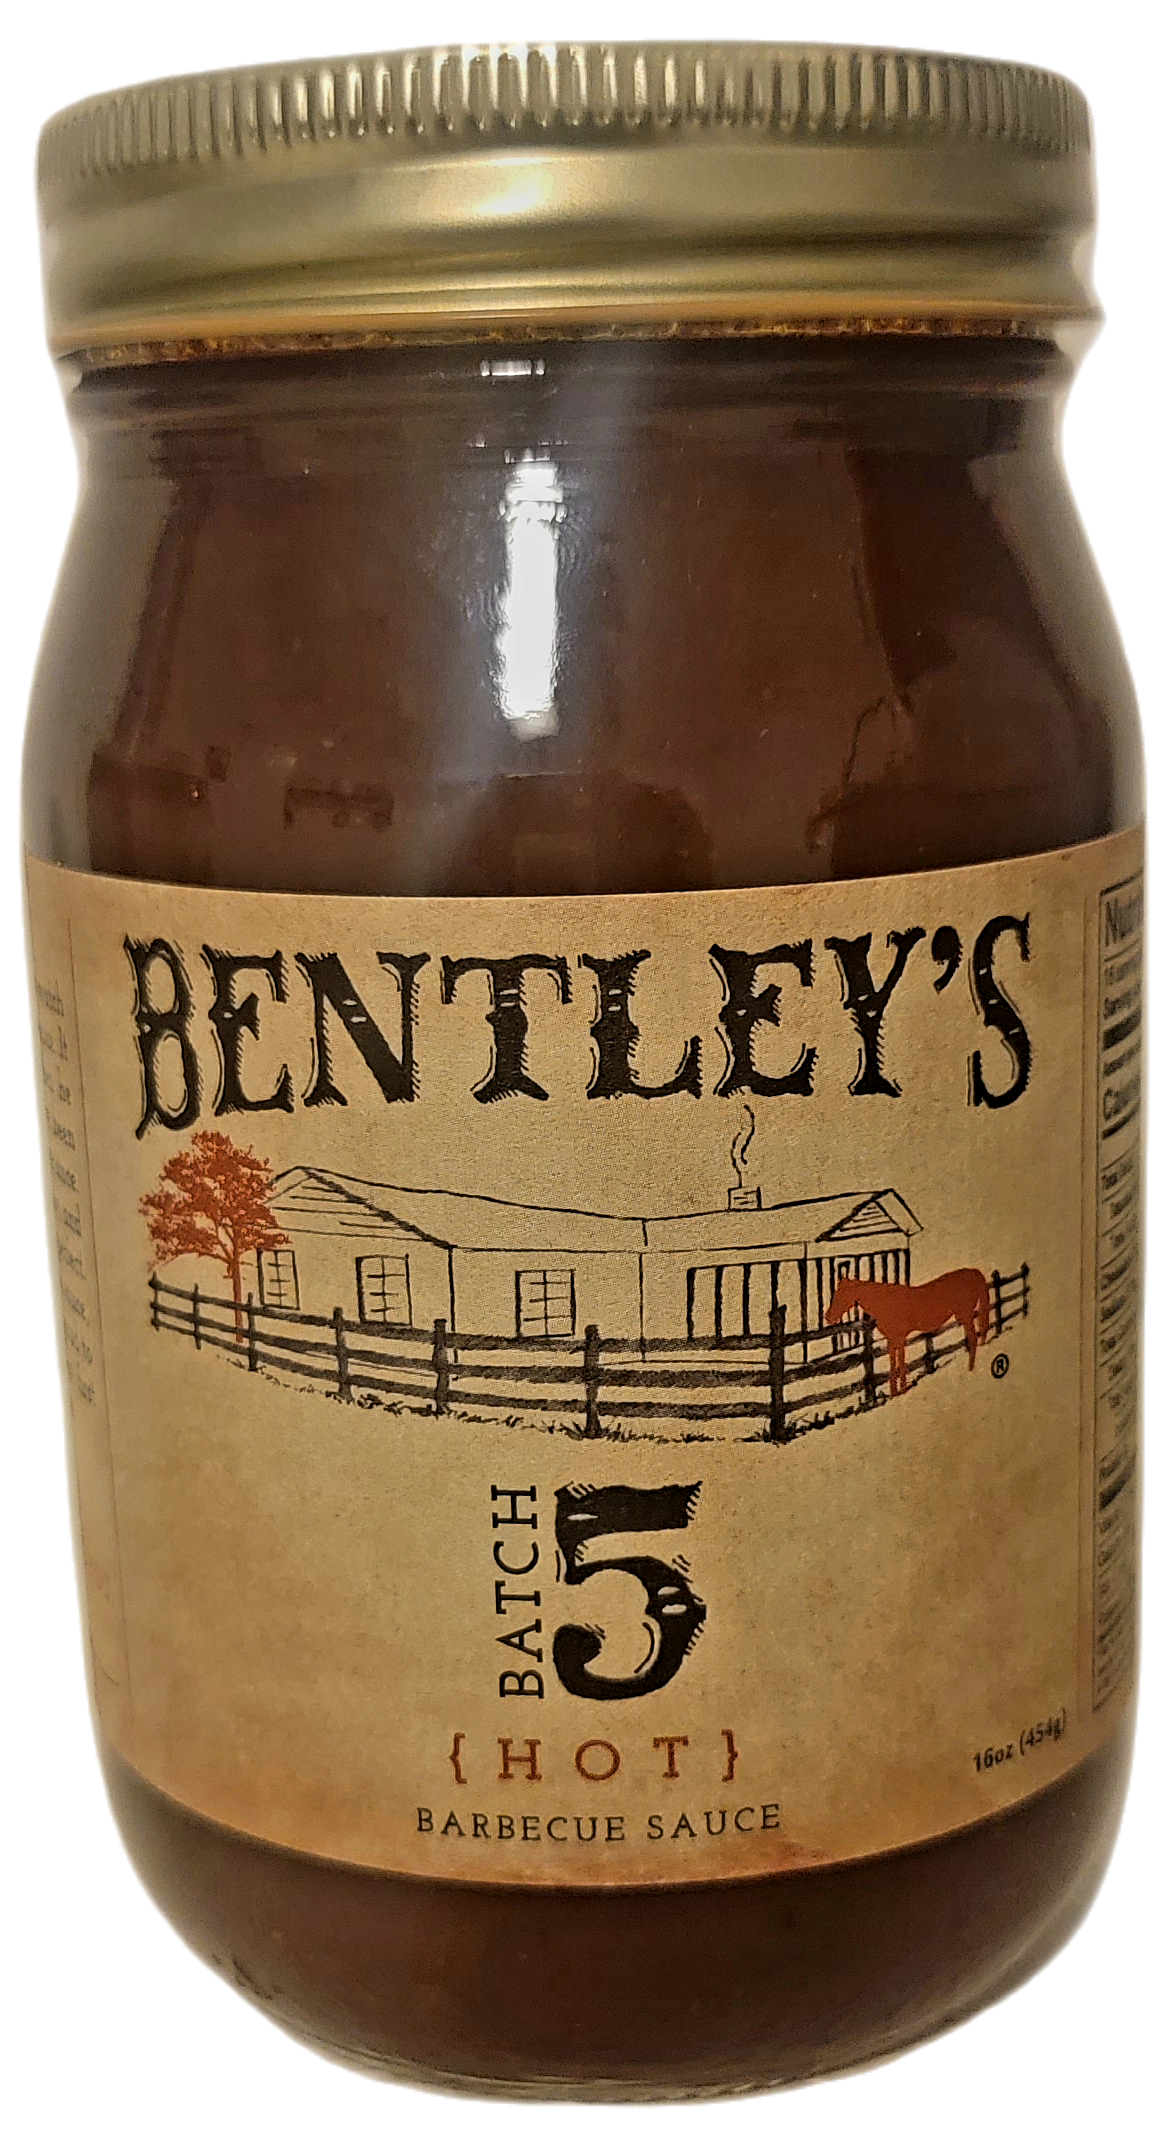 Bentley's Batch 5 BBQ Sauce